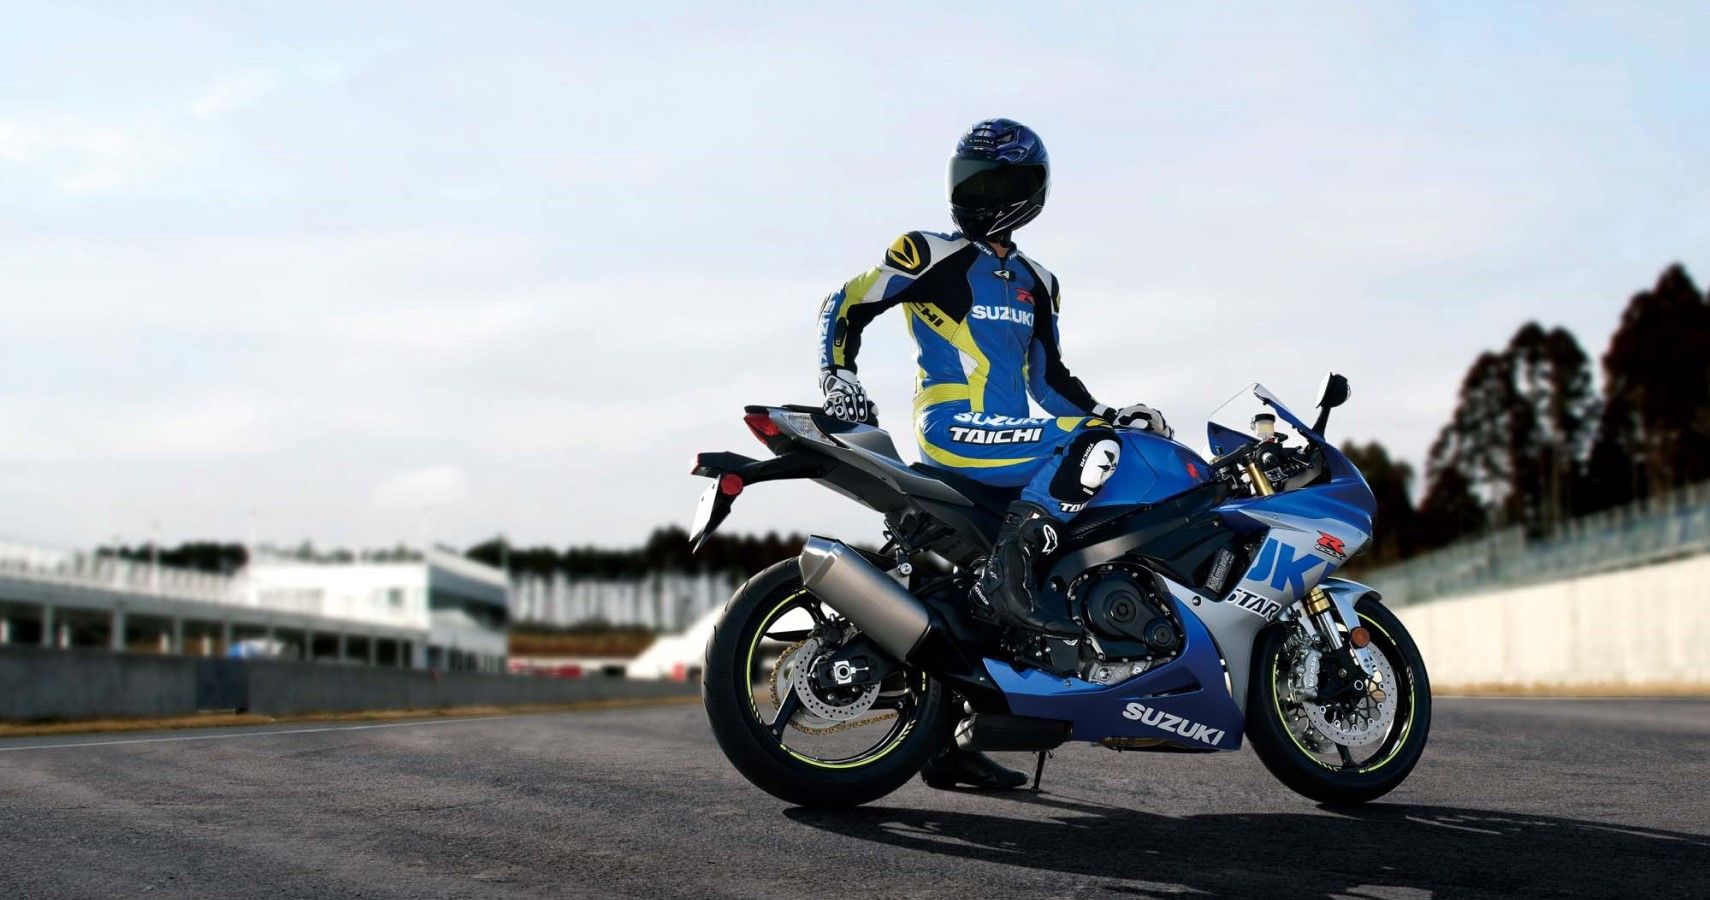 suzuki sport bikes 1000cc